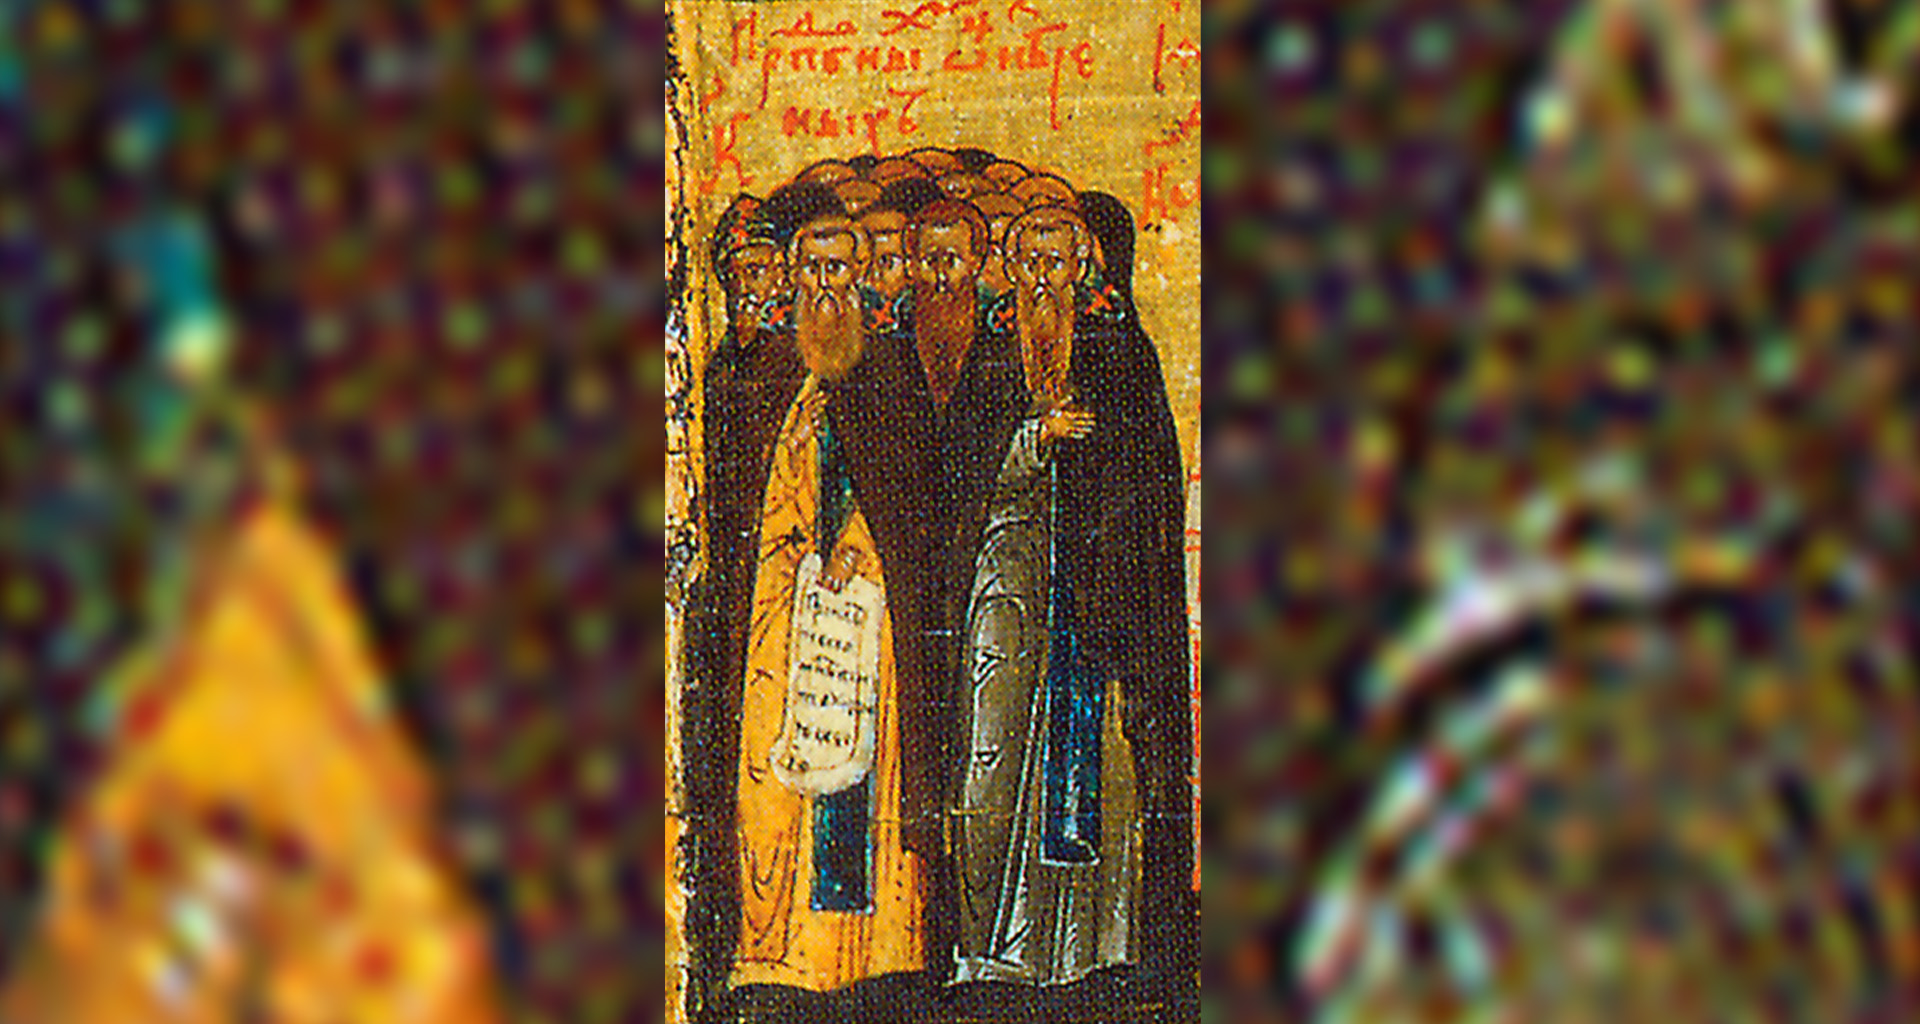 Άγιοι Αββάδες εν τη μονή του Αγίου Σάββα αναιρεθέντες, των λεγομένων Μαύρων